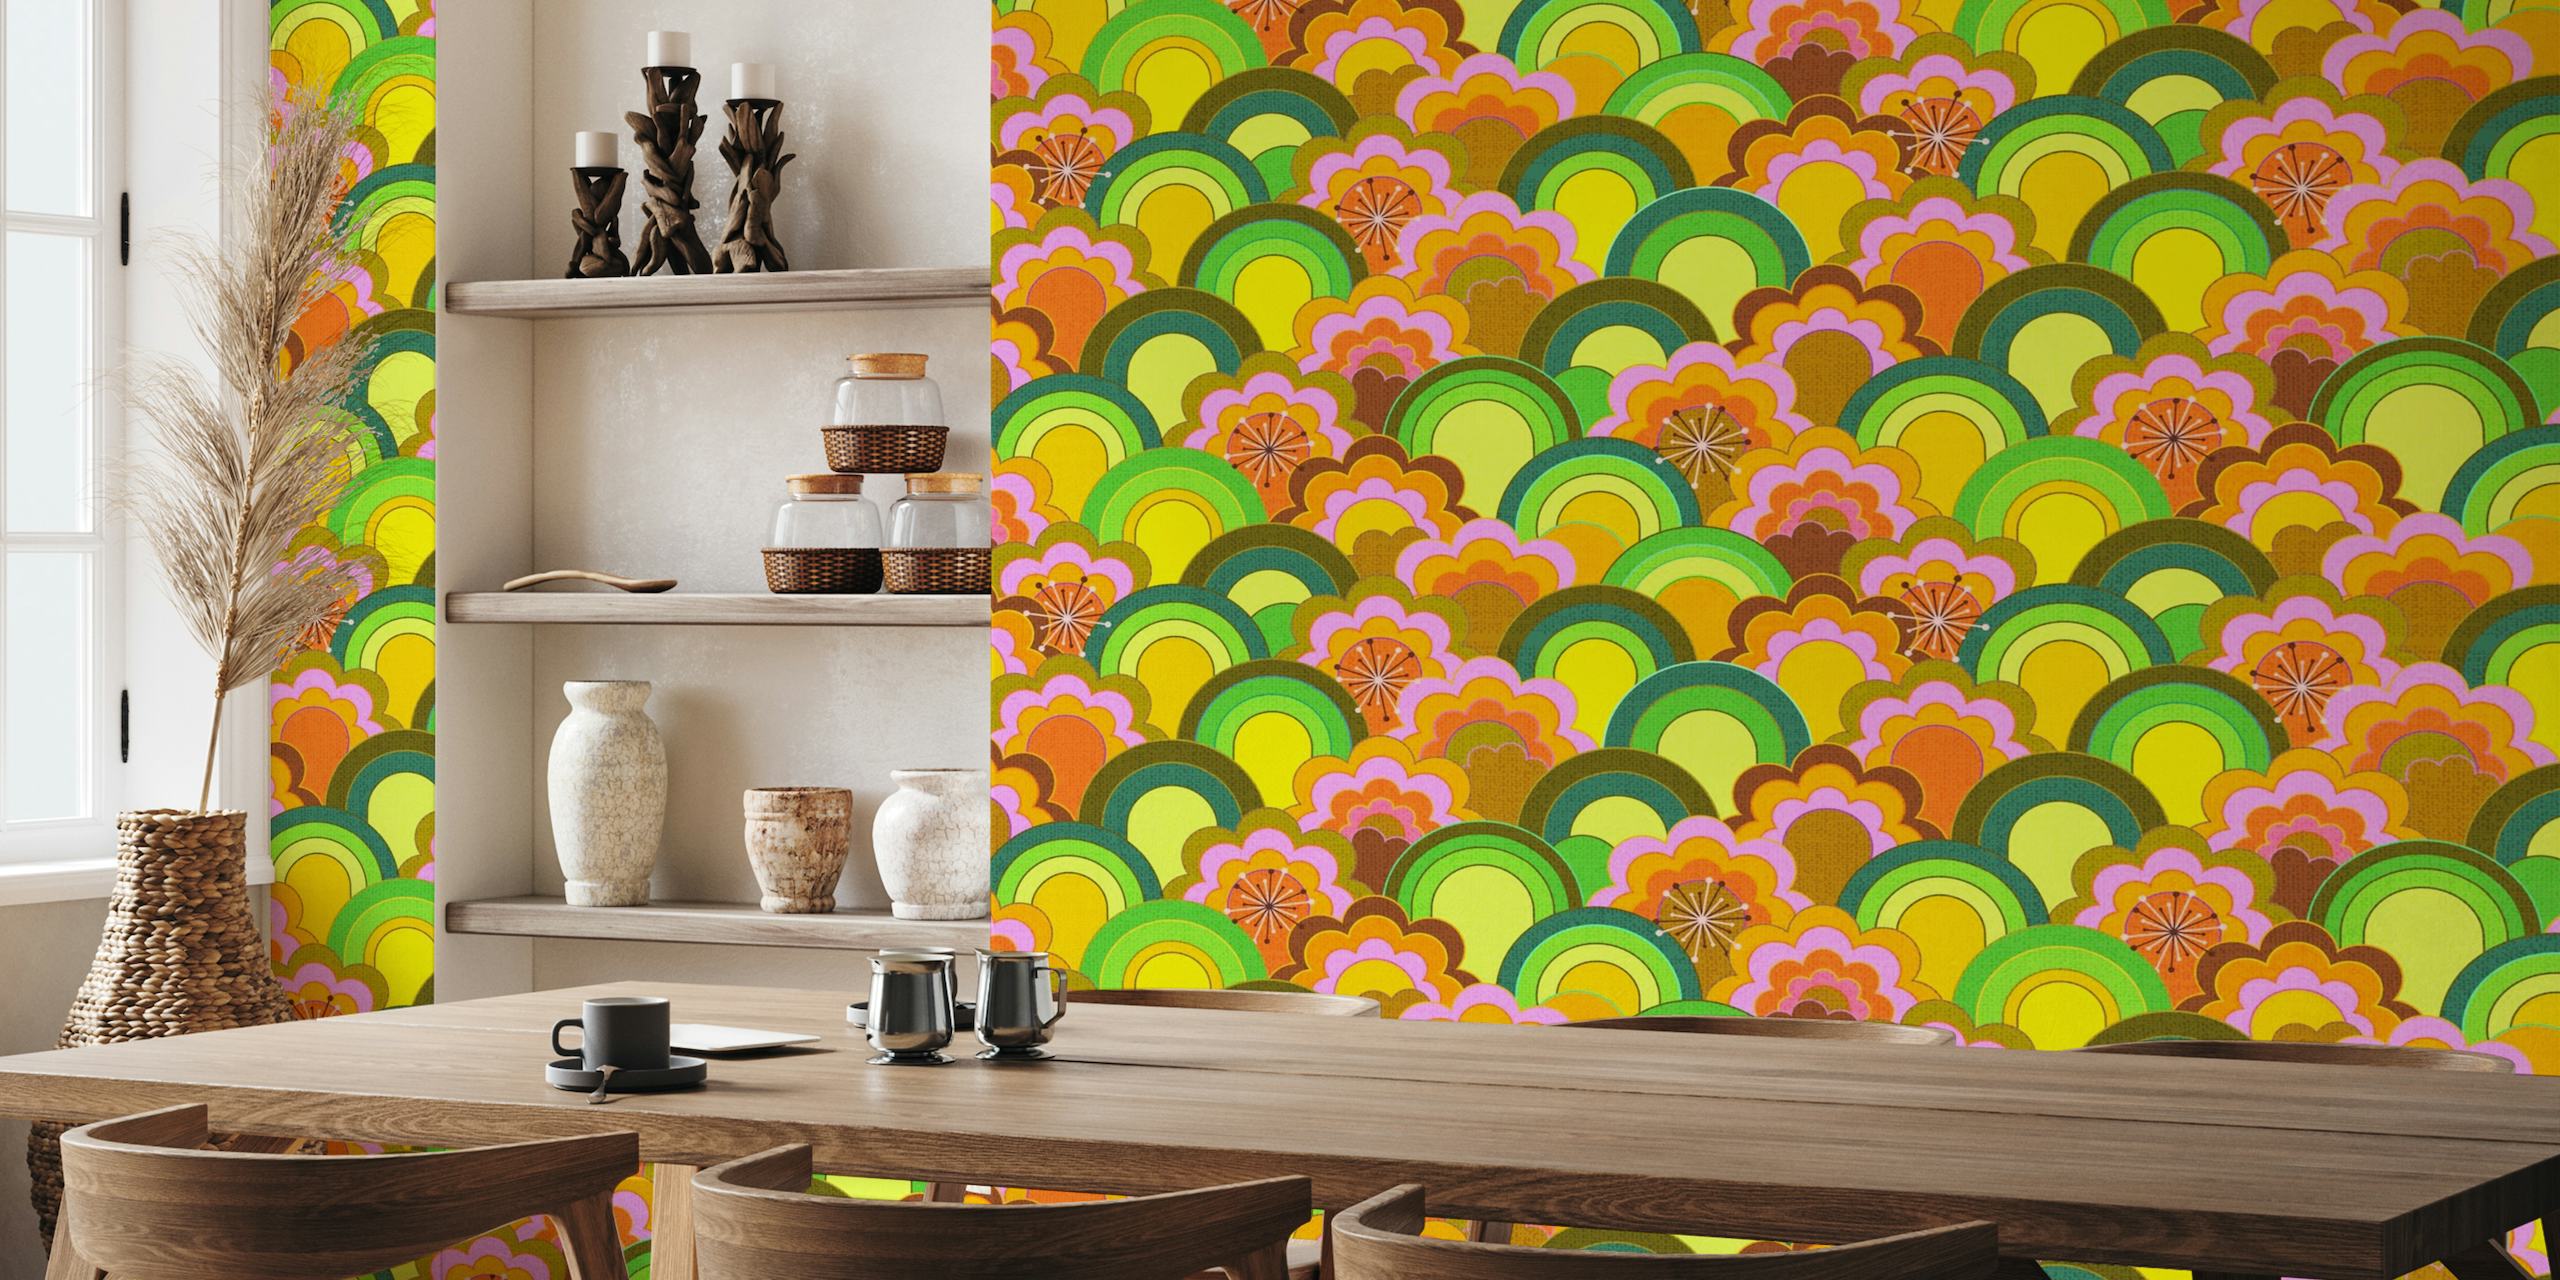 Colorido mural de pared con flores arcoíris inspirado en los años 70 y aspecto texturizado